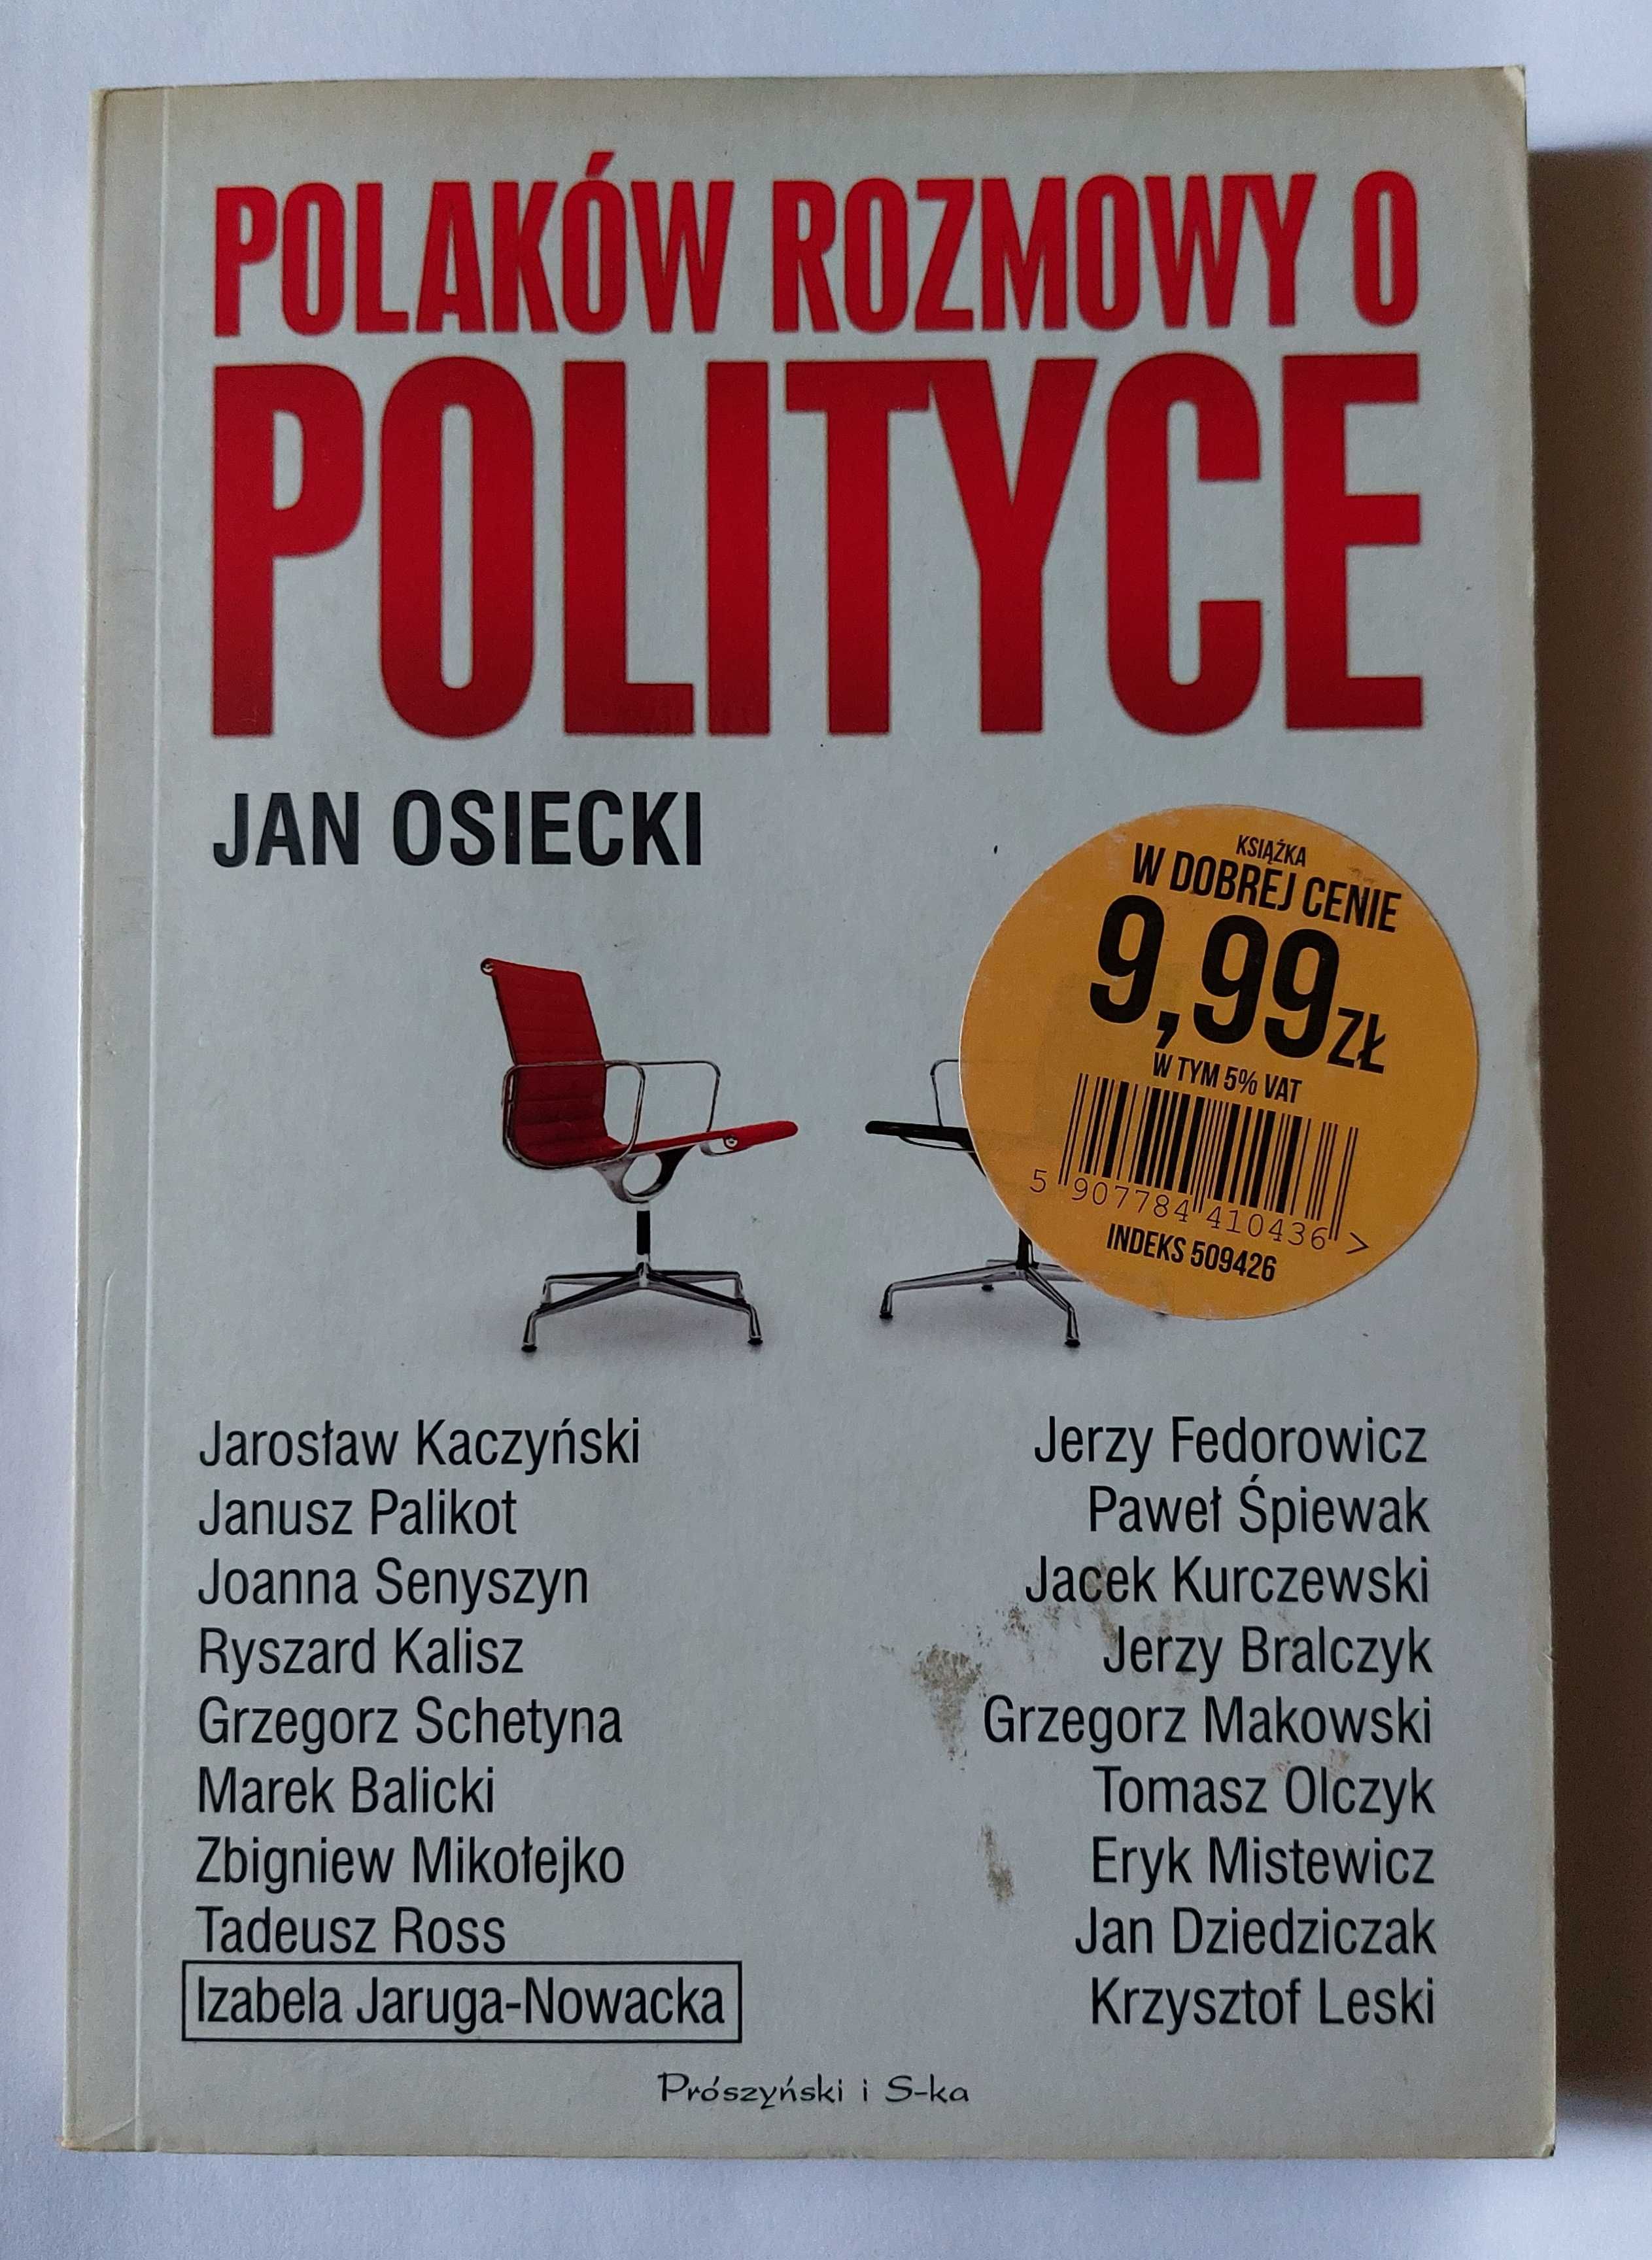 Polaków ROZMOWY O POLITYCE - Jan Osiecki | książka